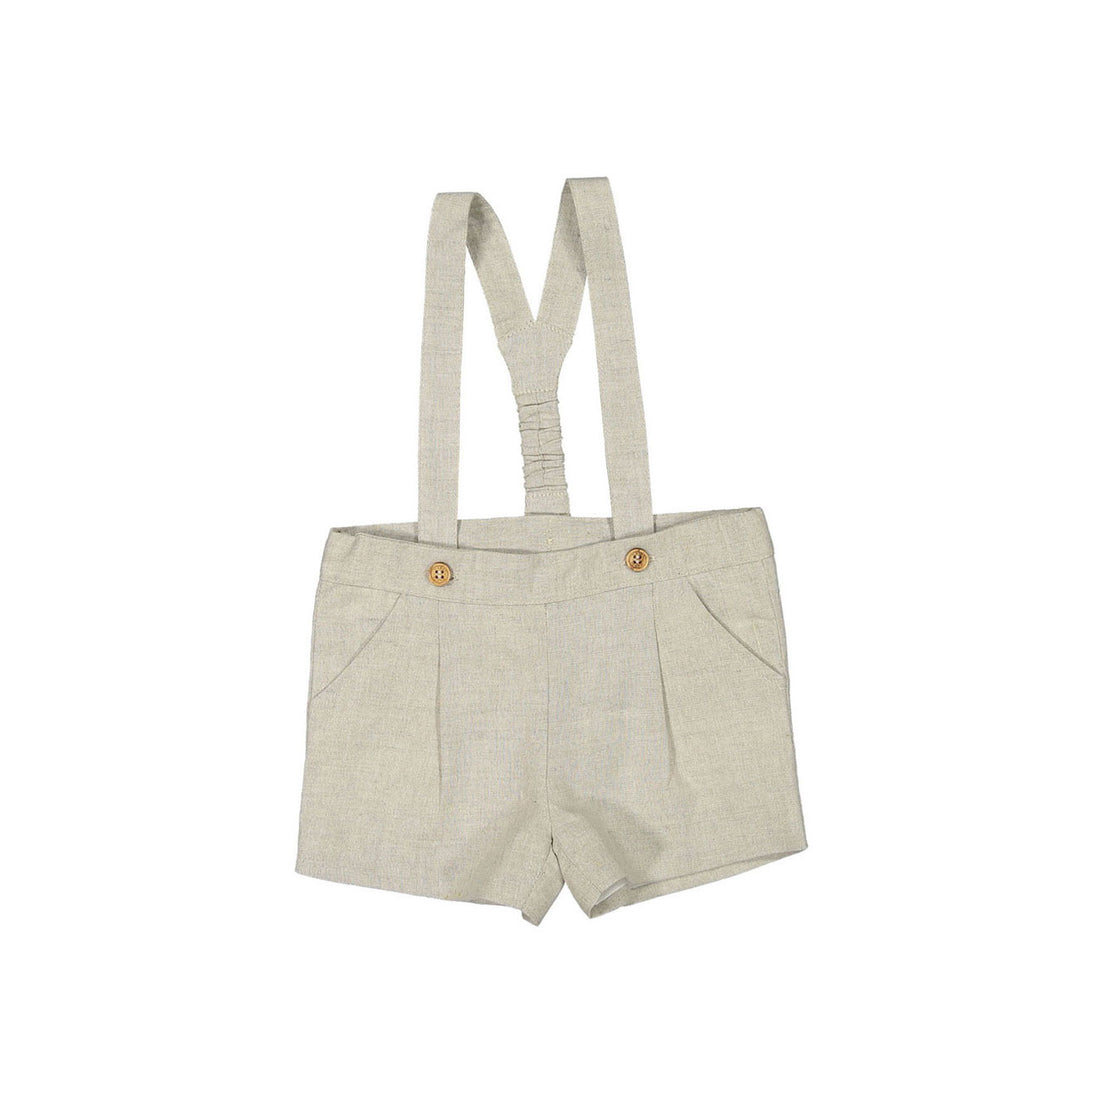 Nanos Tan Linen Baby Suspender Shorts